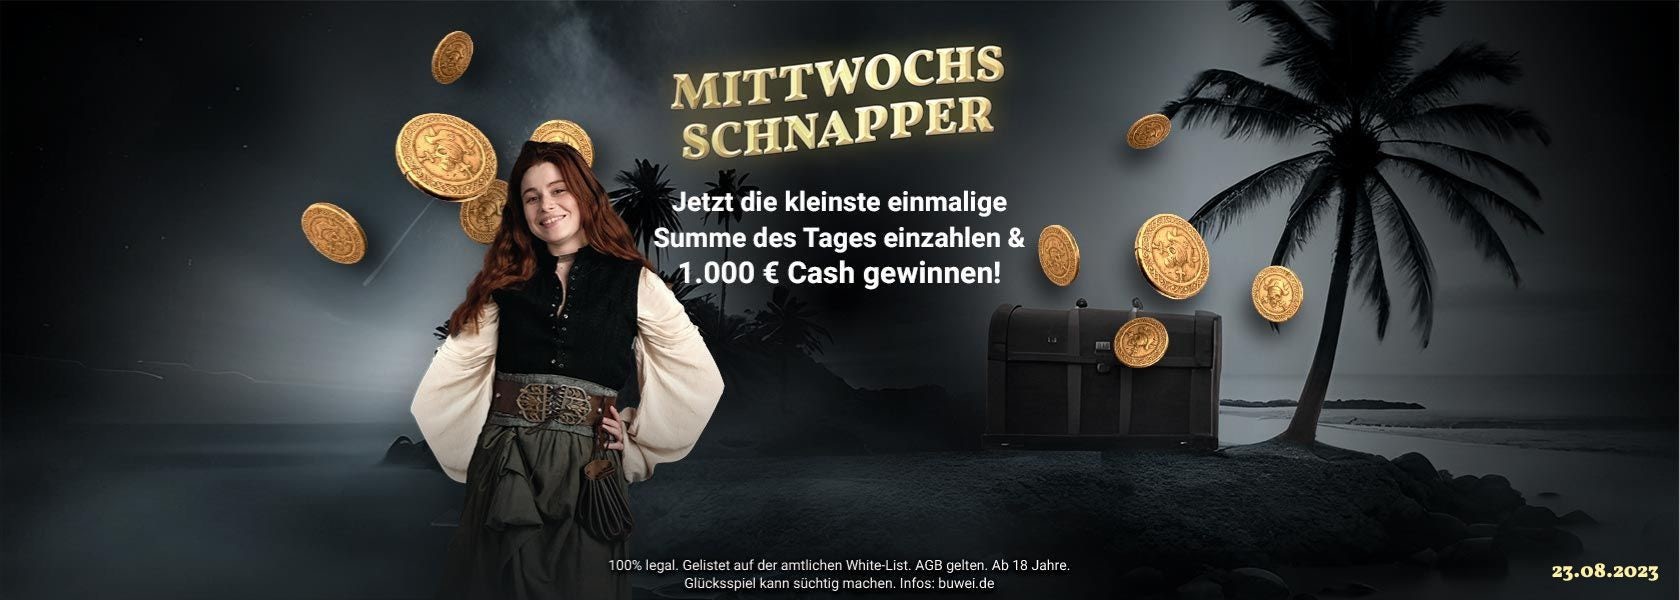 jackpotpiraten-titelbild-mittwochs-schnapper-230823